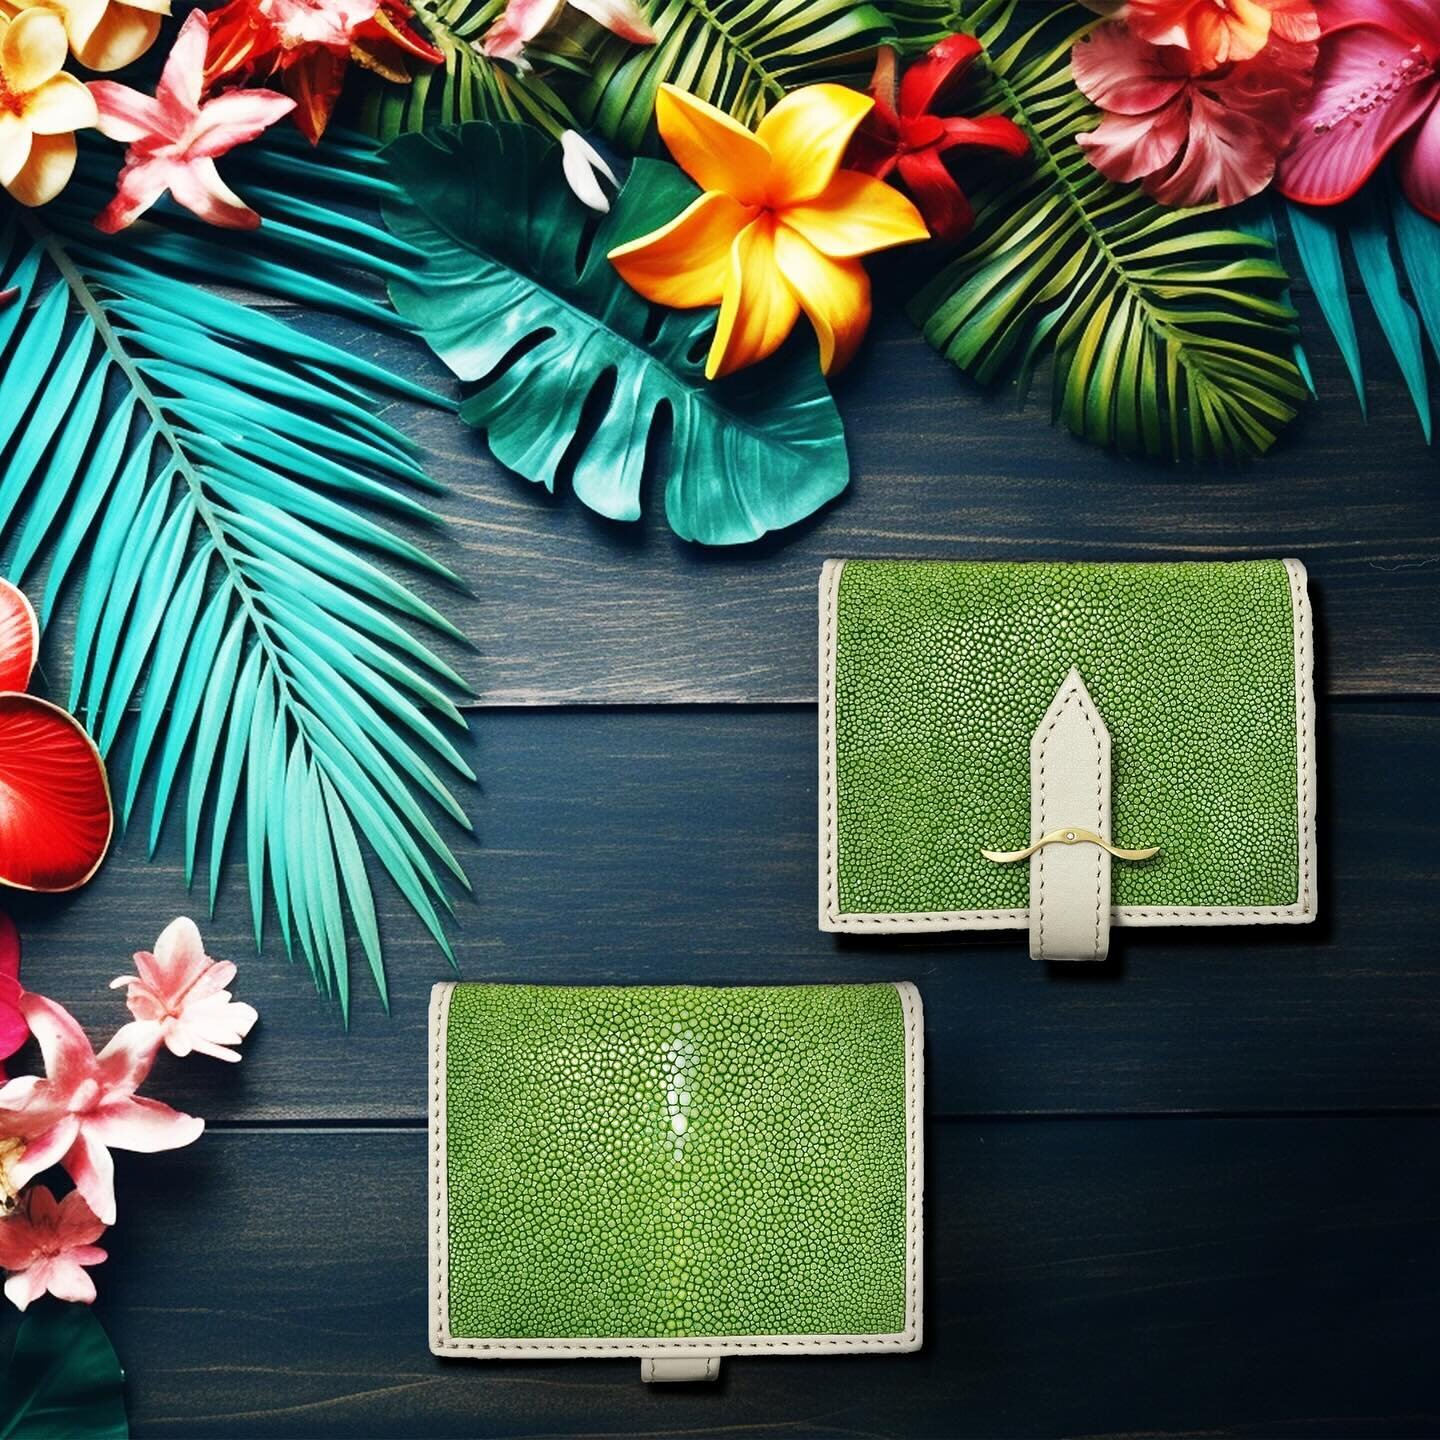 ハワイ・マウイ島をイメージした新色グリーン🏝️

鮮やかなグリーンが目を引く
使いやすいミニウォレットです😊

仕様は
⚪︎コインケース
⚪︎紙幣用コンパートメント
⚪︎カードスロット&times;3
⚪︎カードポケット&times;1

お財布を持たなくなってきた現代のスタイルに
丁度いいサイズ感のミニ財布です✨
　
　
根強く大地に広がる木々の色合いは
金運や仕事運が寄ってくるといわれています。

新しく始まった2024年🍾
ぜひお買い換えやプレゼントにご検討ください☺️

2024.